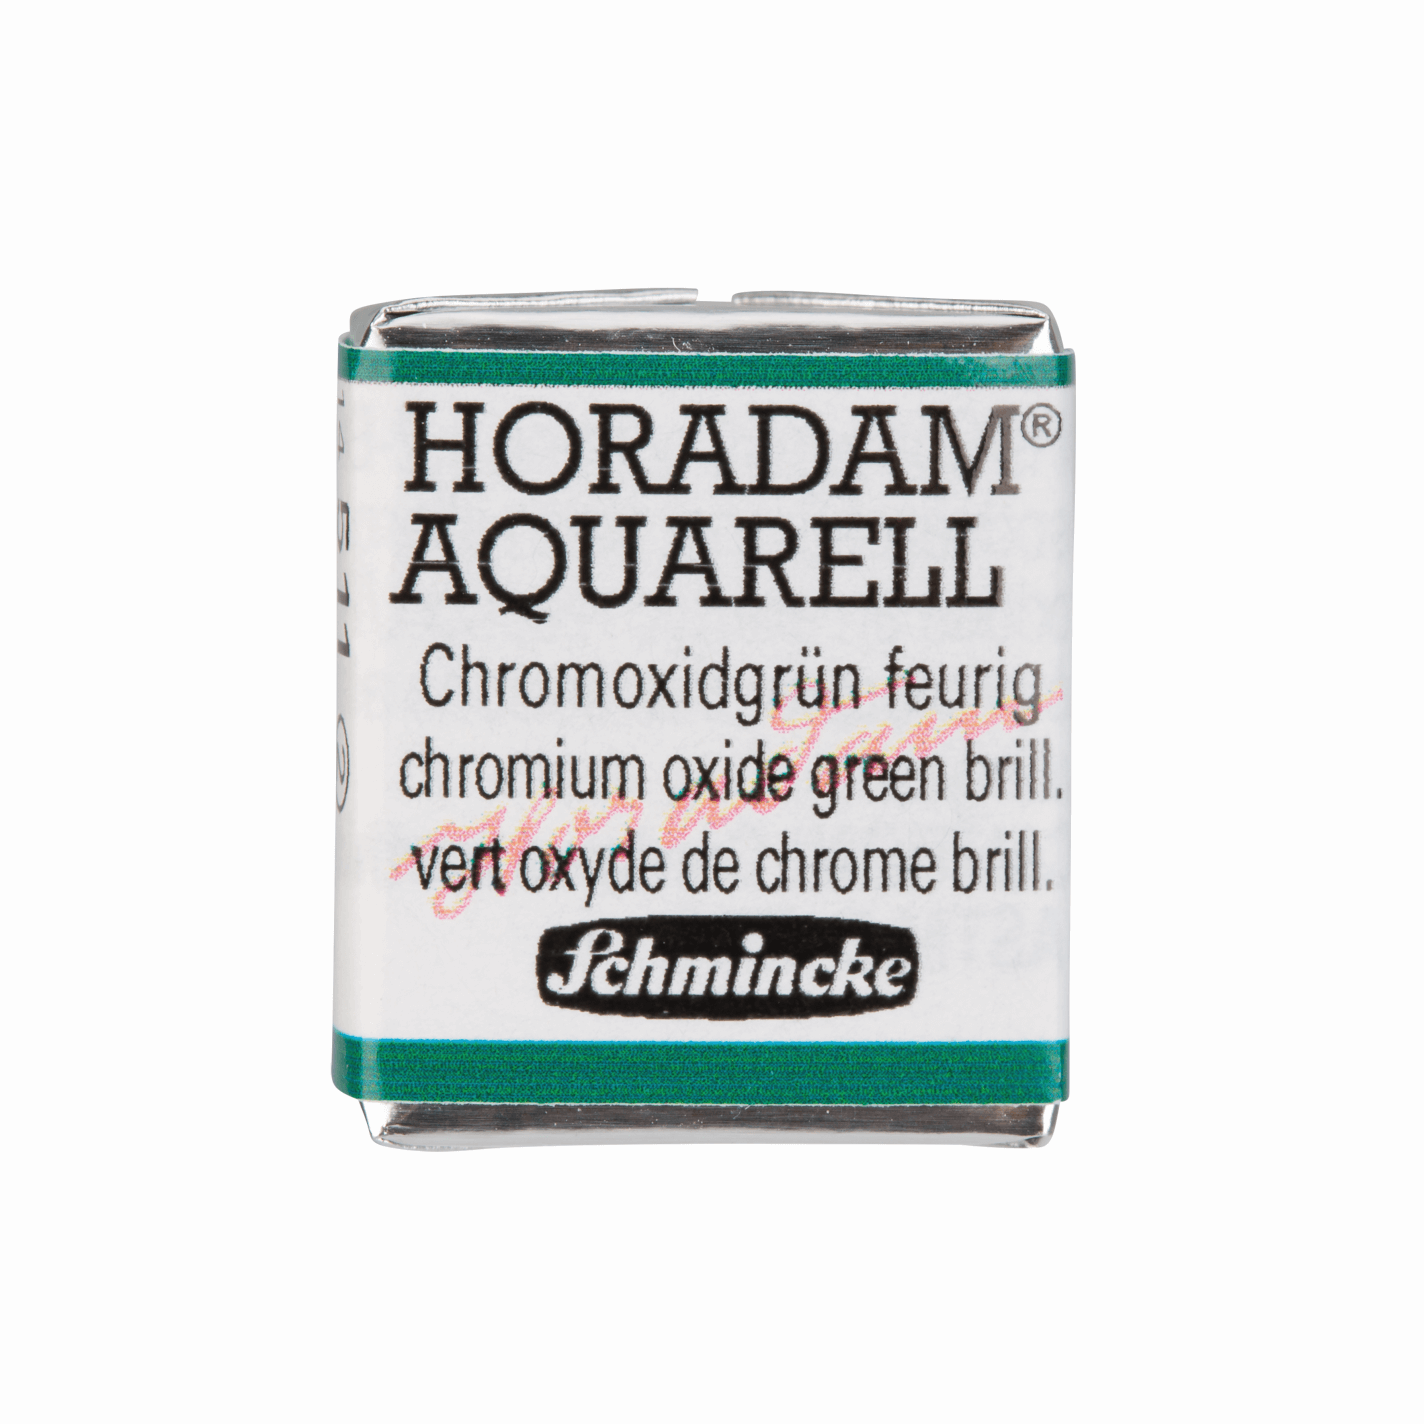 Schmincke Horadam Aquarell pans 1/2 pan Chrom Oxide Green Brill